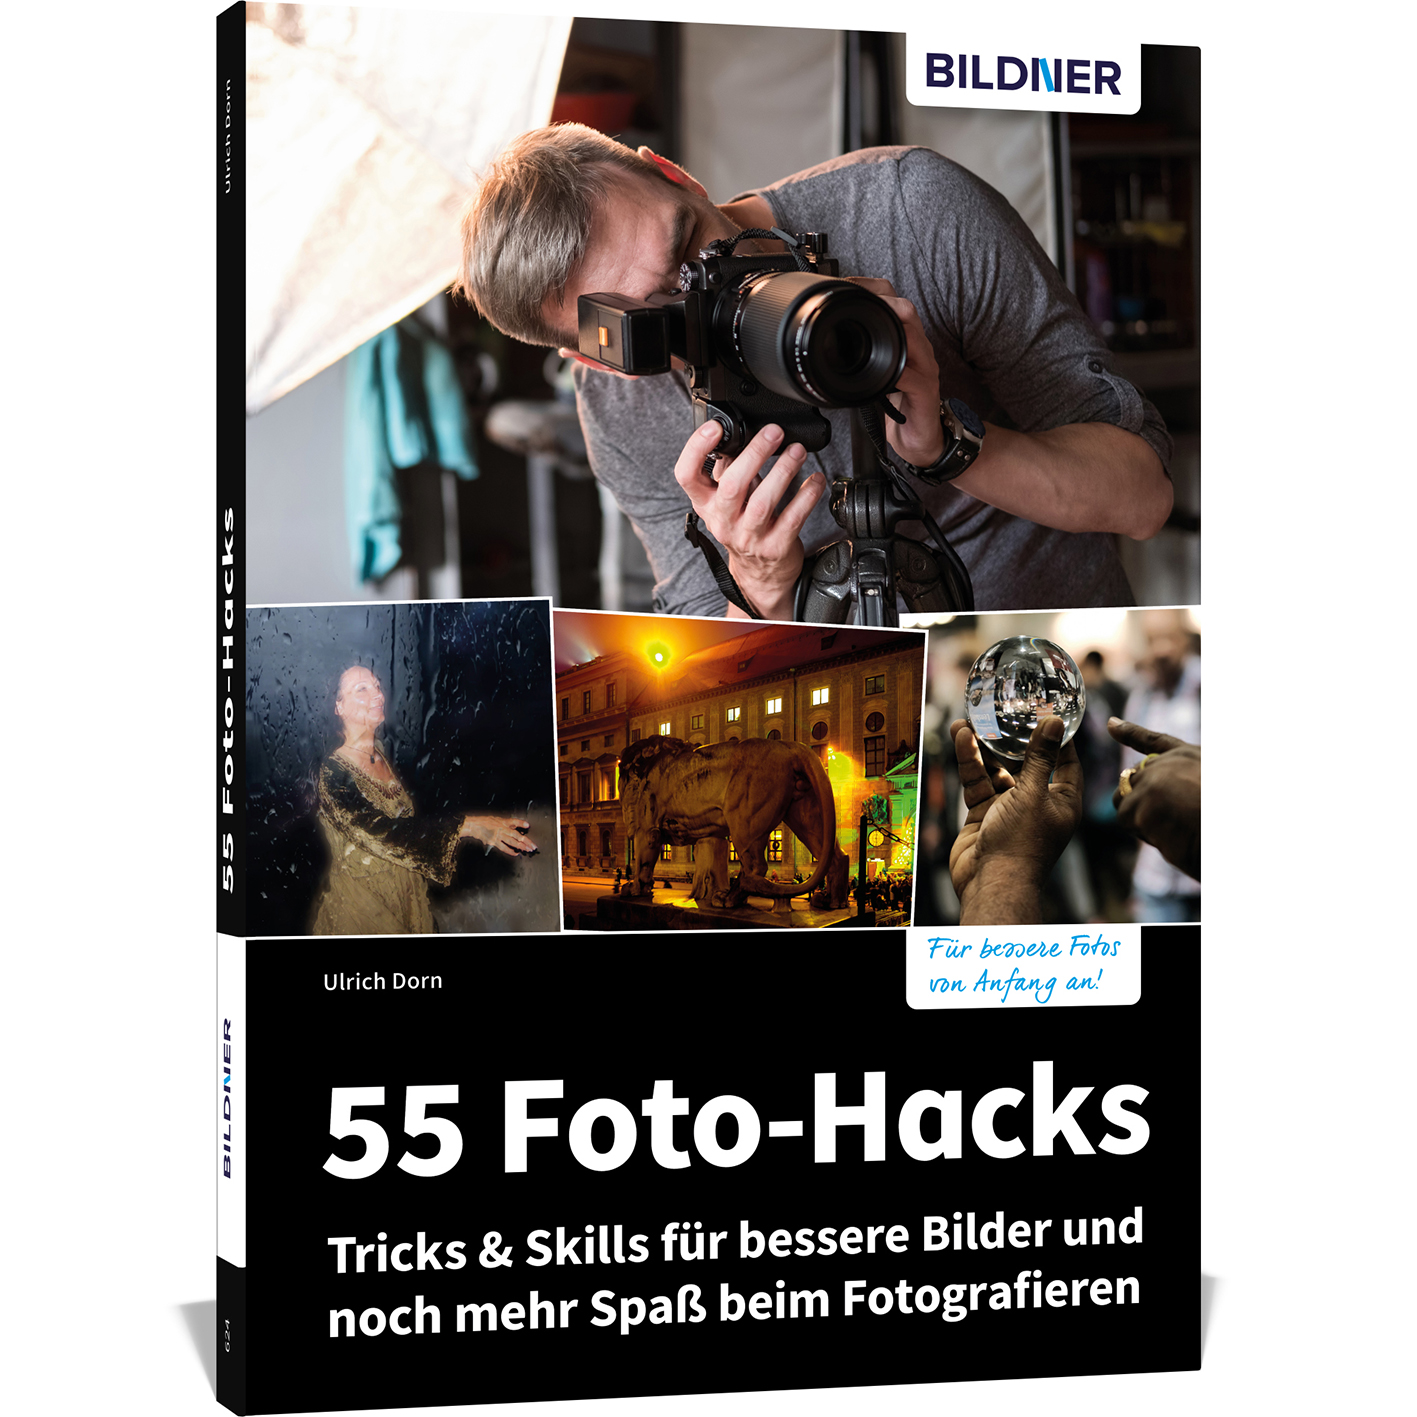 & Tricks und Fotografieren bessere Foto-Hacks Skills mehr noch 55 Spaß – Bilder für beim